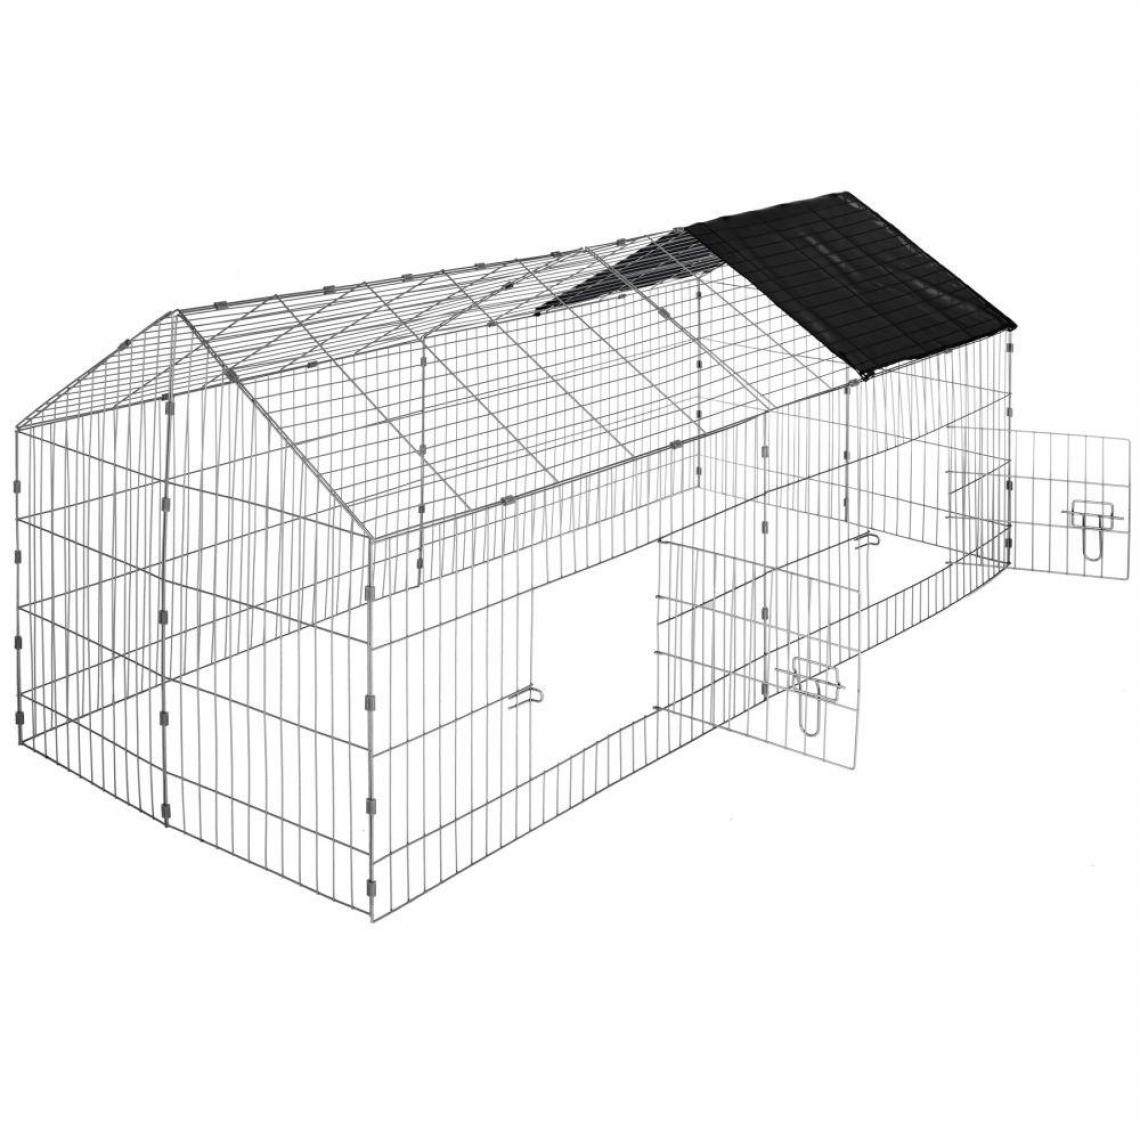 Helloshop26 - Enclos cage pour rongeurs 180 x 75 x 75 cm noir 3708153 - Cage pour rongeur